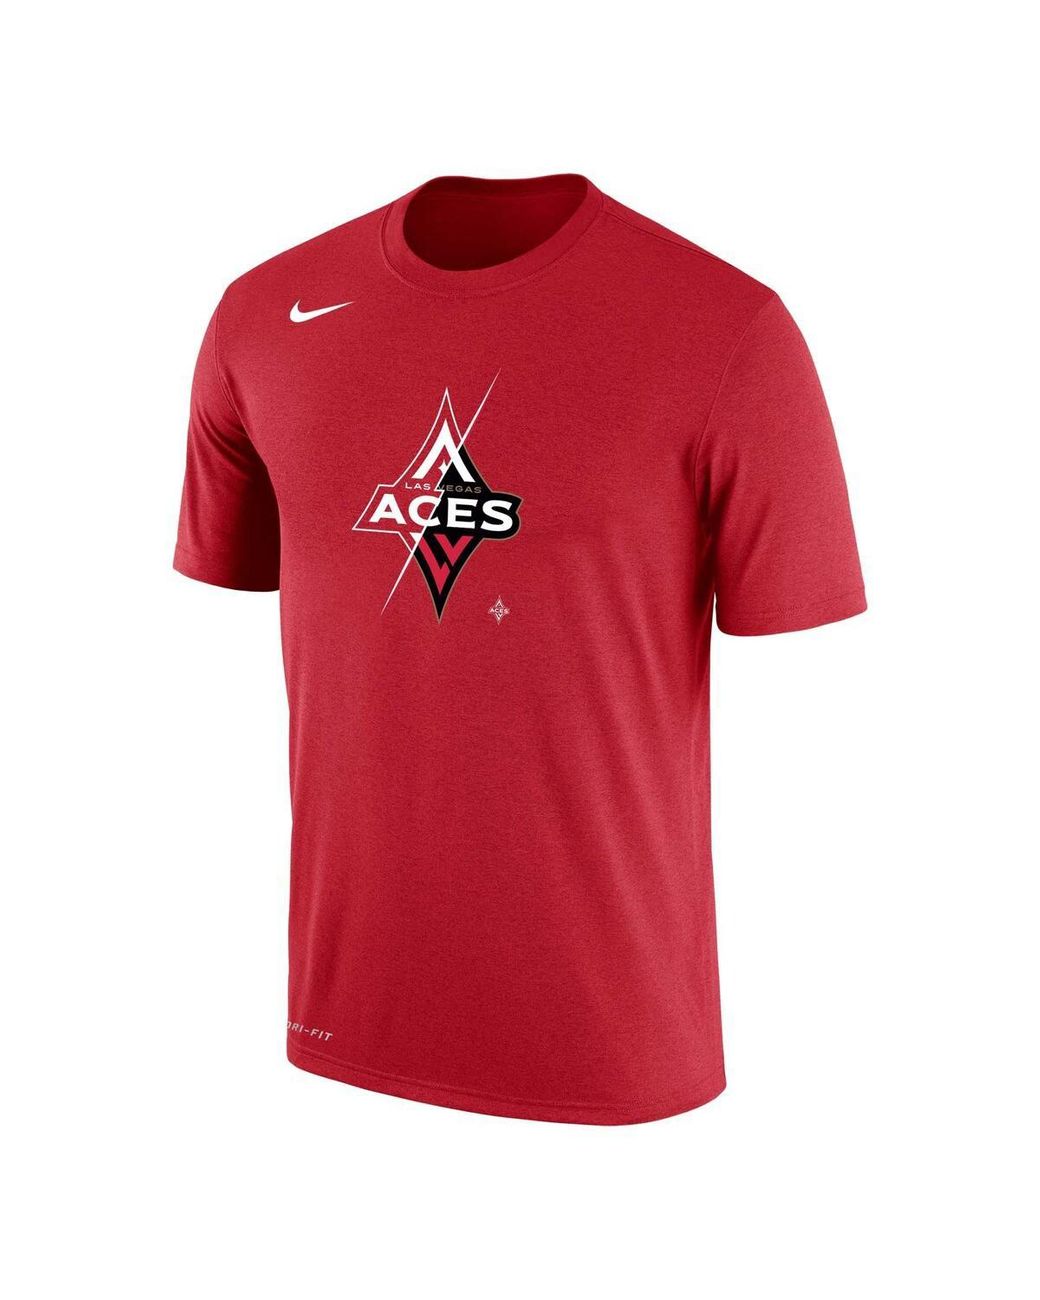 Unisex Las Vegas Aces Nike White 2023 WNBA Finals Champions Authentic  Parade T-Shirt